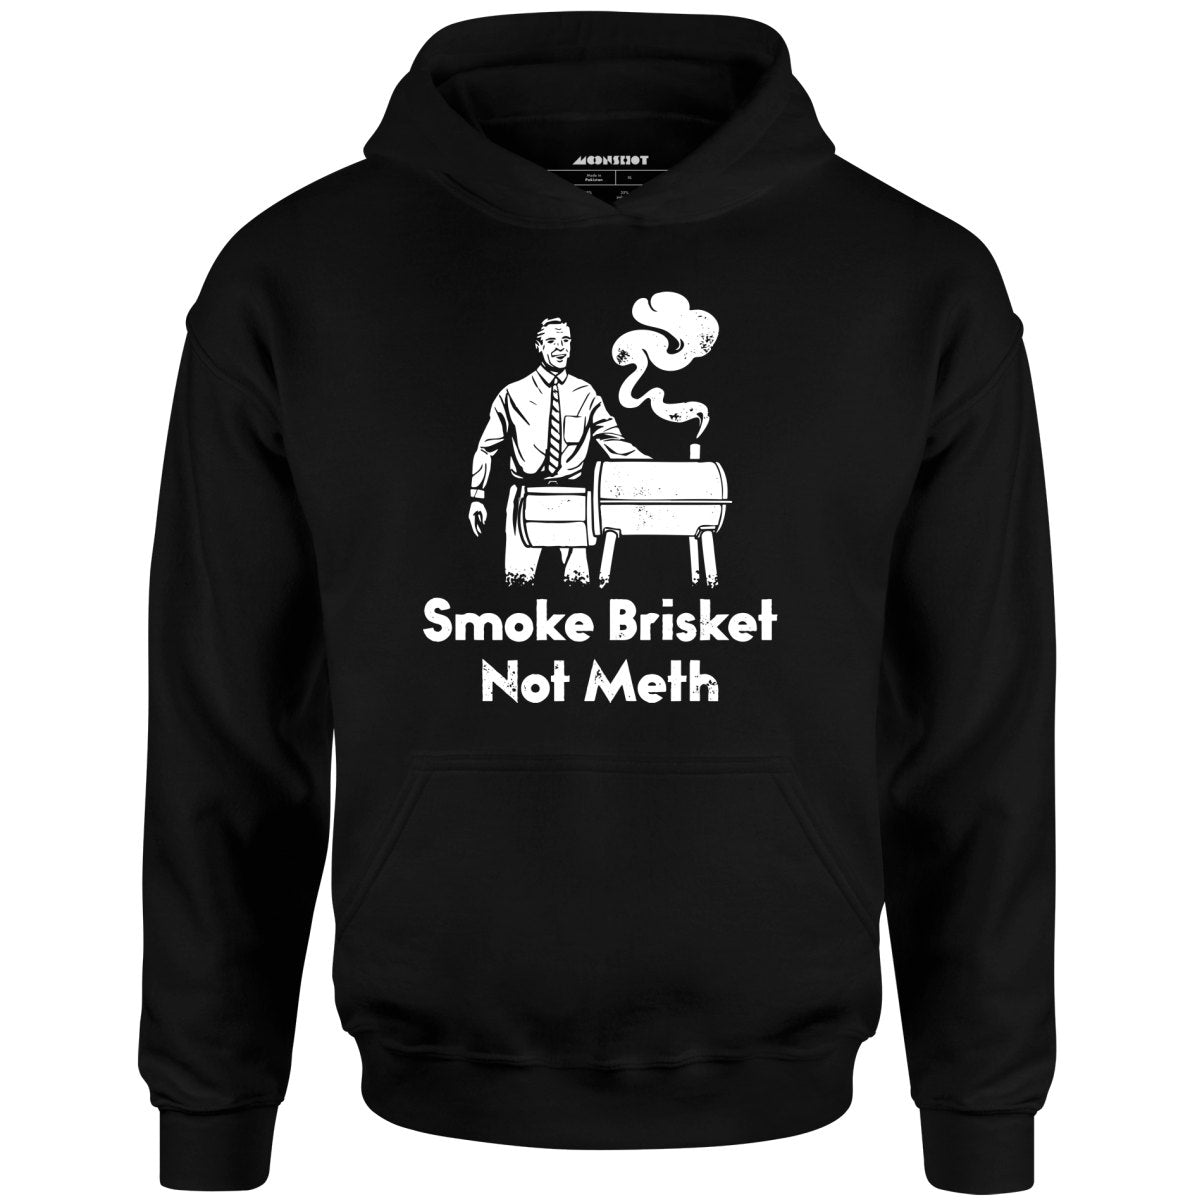 Smoke Brisket Not Meth - Unisex Hoodie